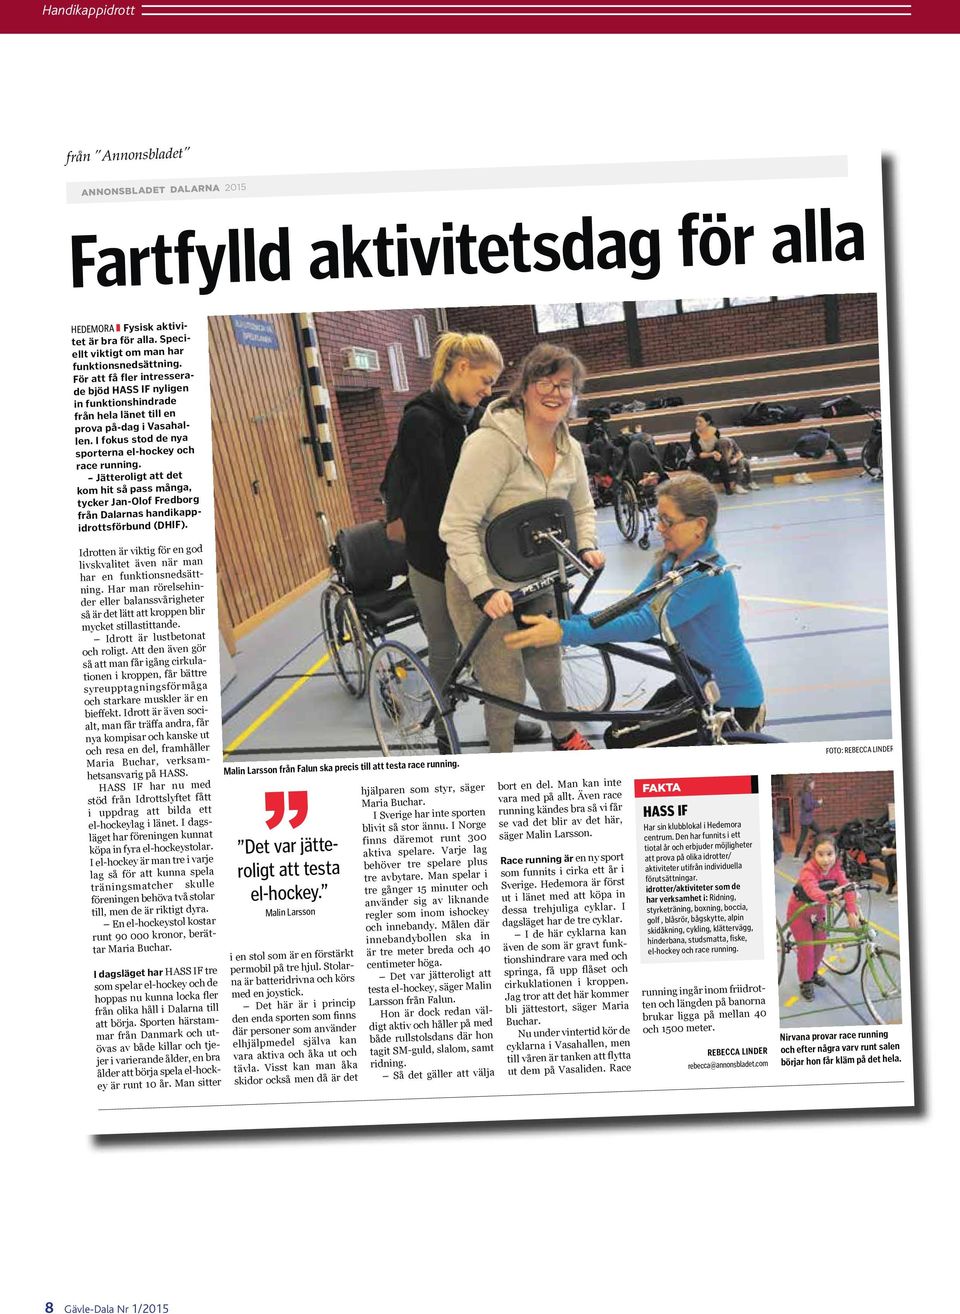 Jätteroligt att det kom hit så pass många, tycker Jan-Olof Fredborg från Dalarnas handikappidrottsförbund (DHIF). Idrotten är viktig för en god livskvalitet även när man har en funktionsnedsättning.